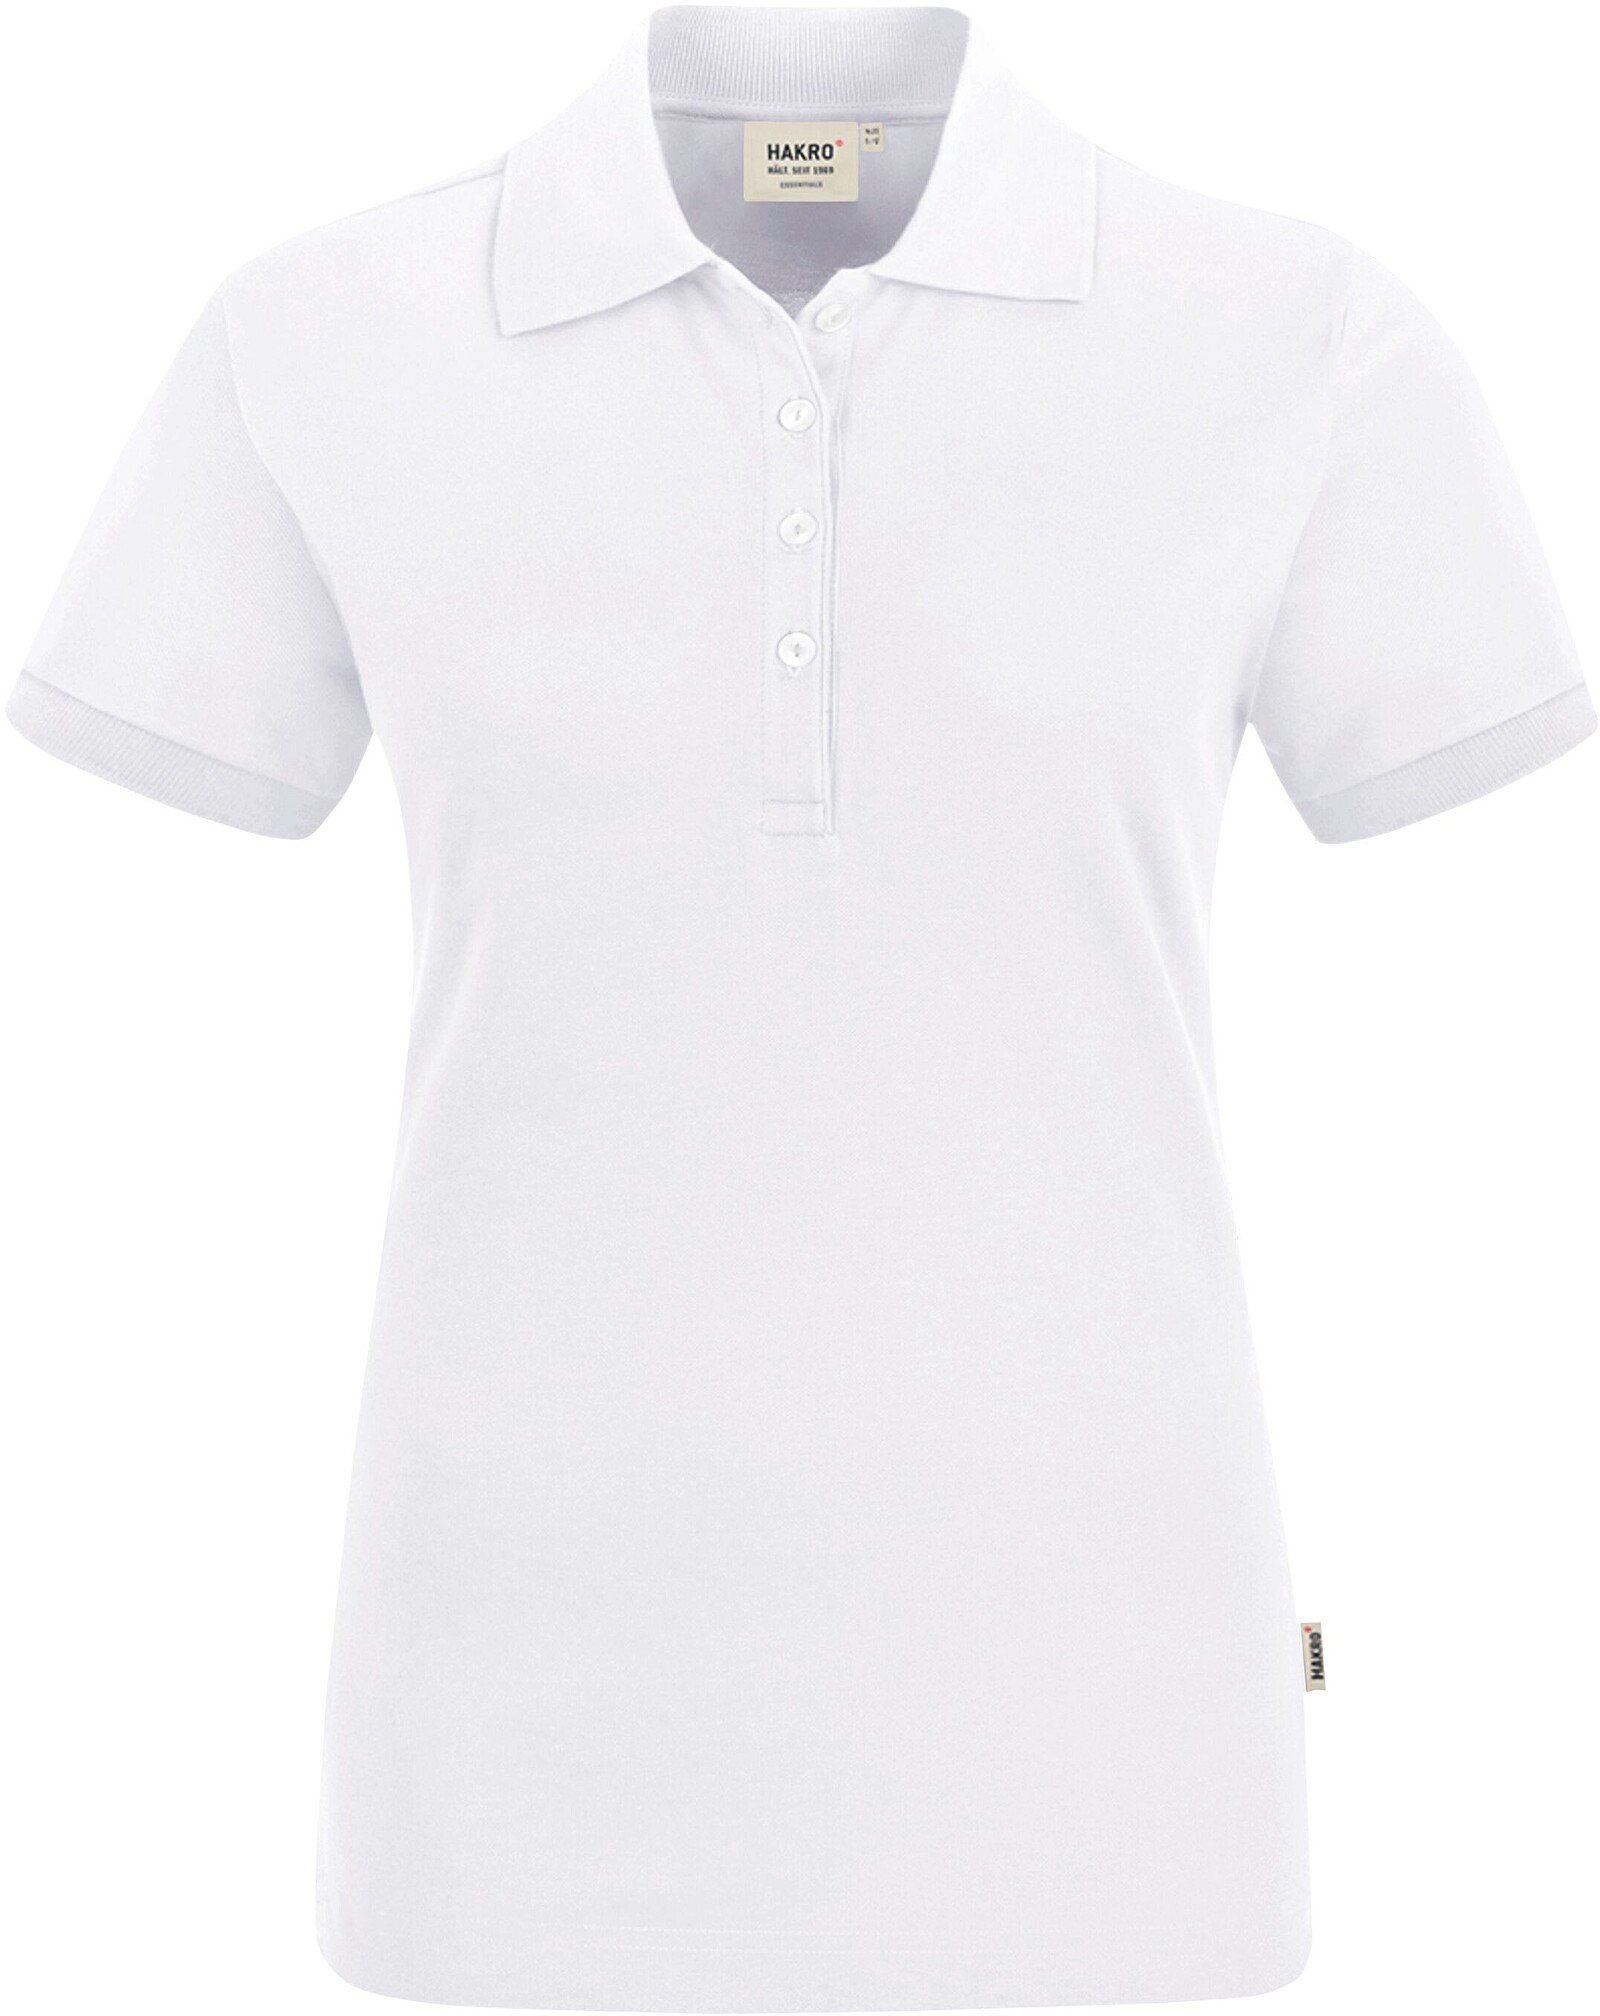 Damen Poloshirt Stretch 222, weiß, Gr. 3XL 